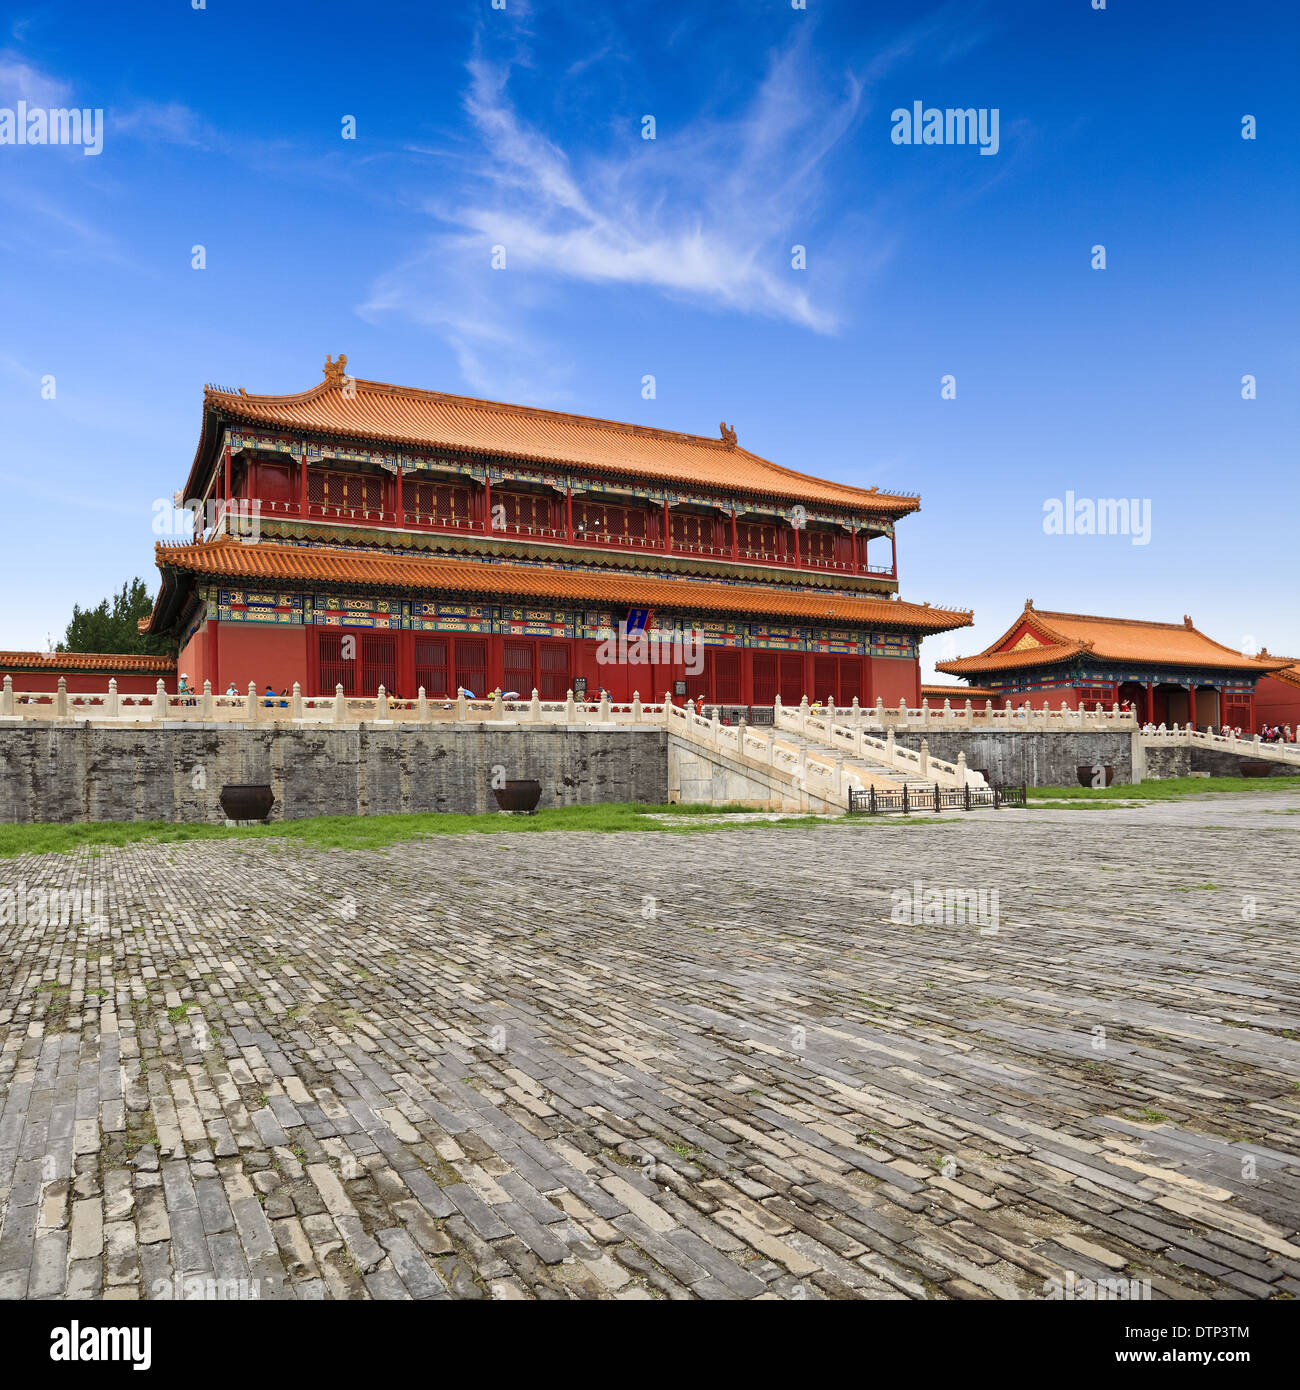 beijing forbidden city building Stock Photo